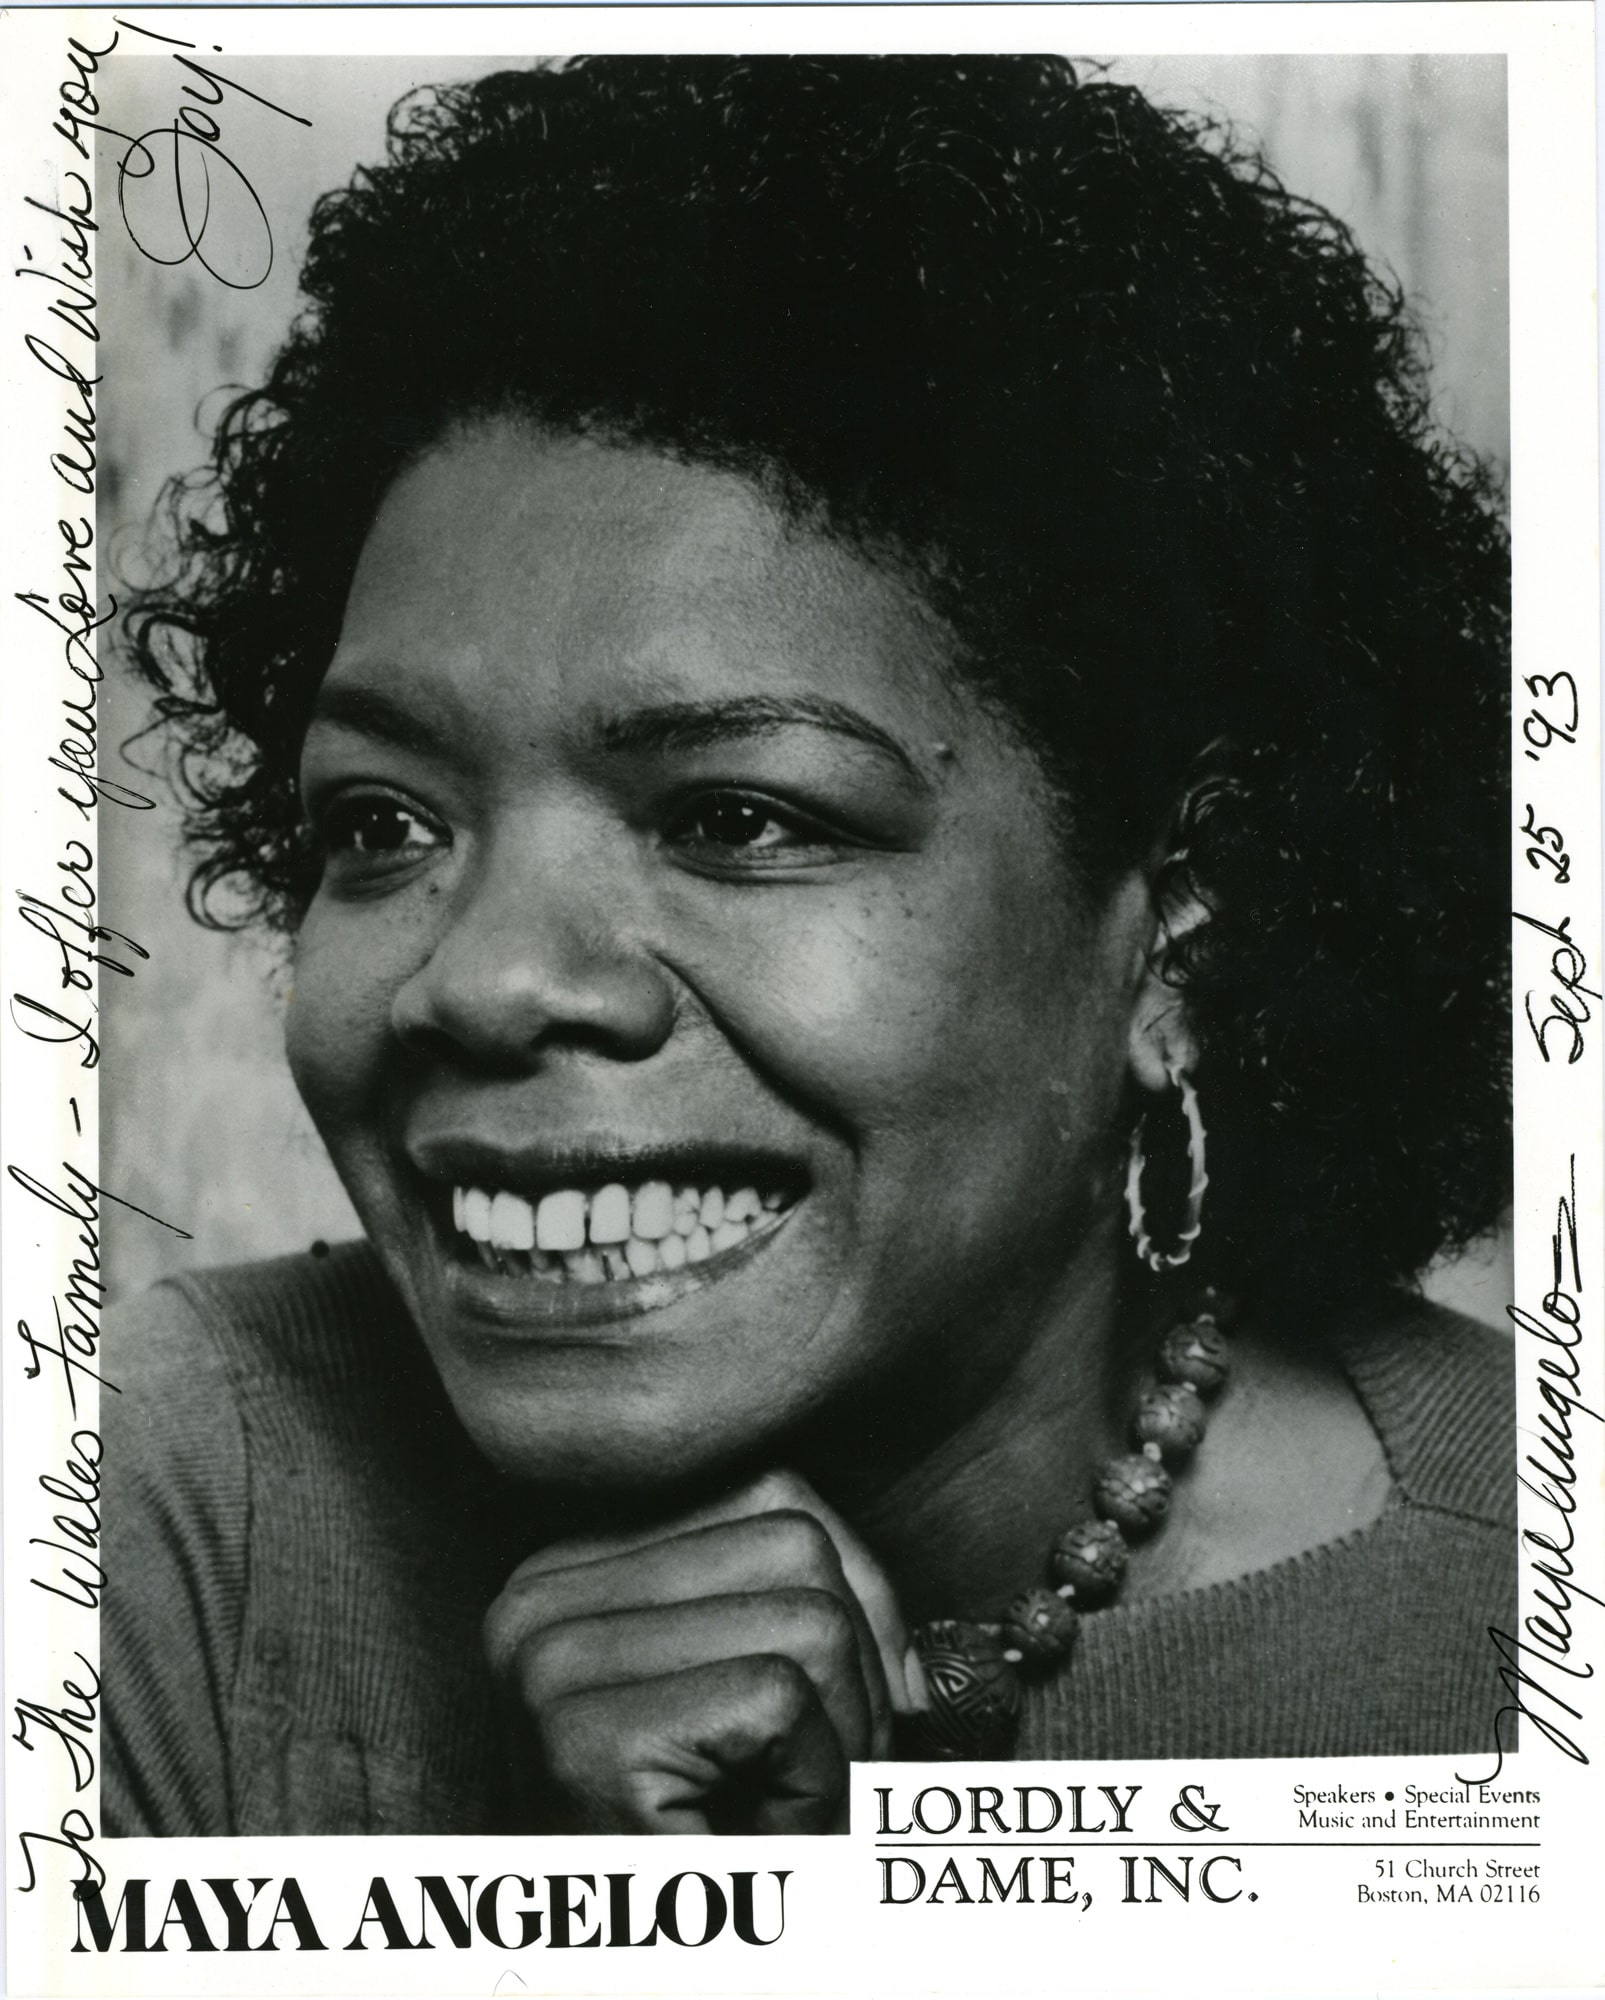 Autographed photo of Maya Angelou